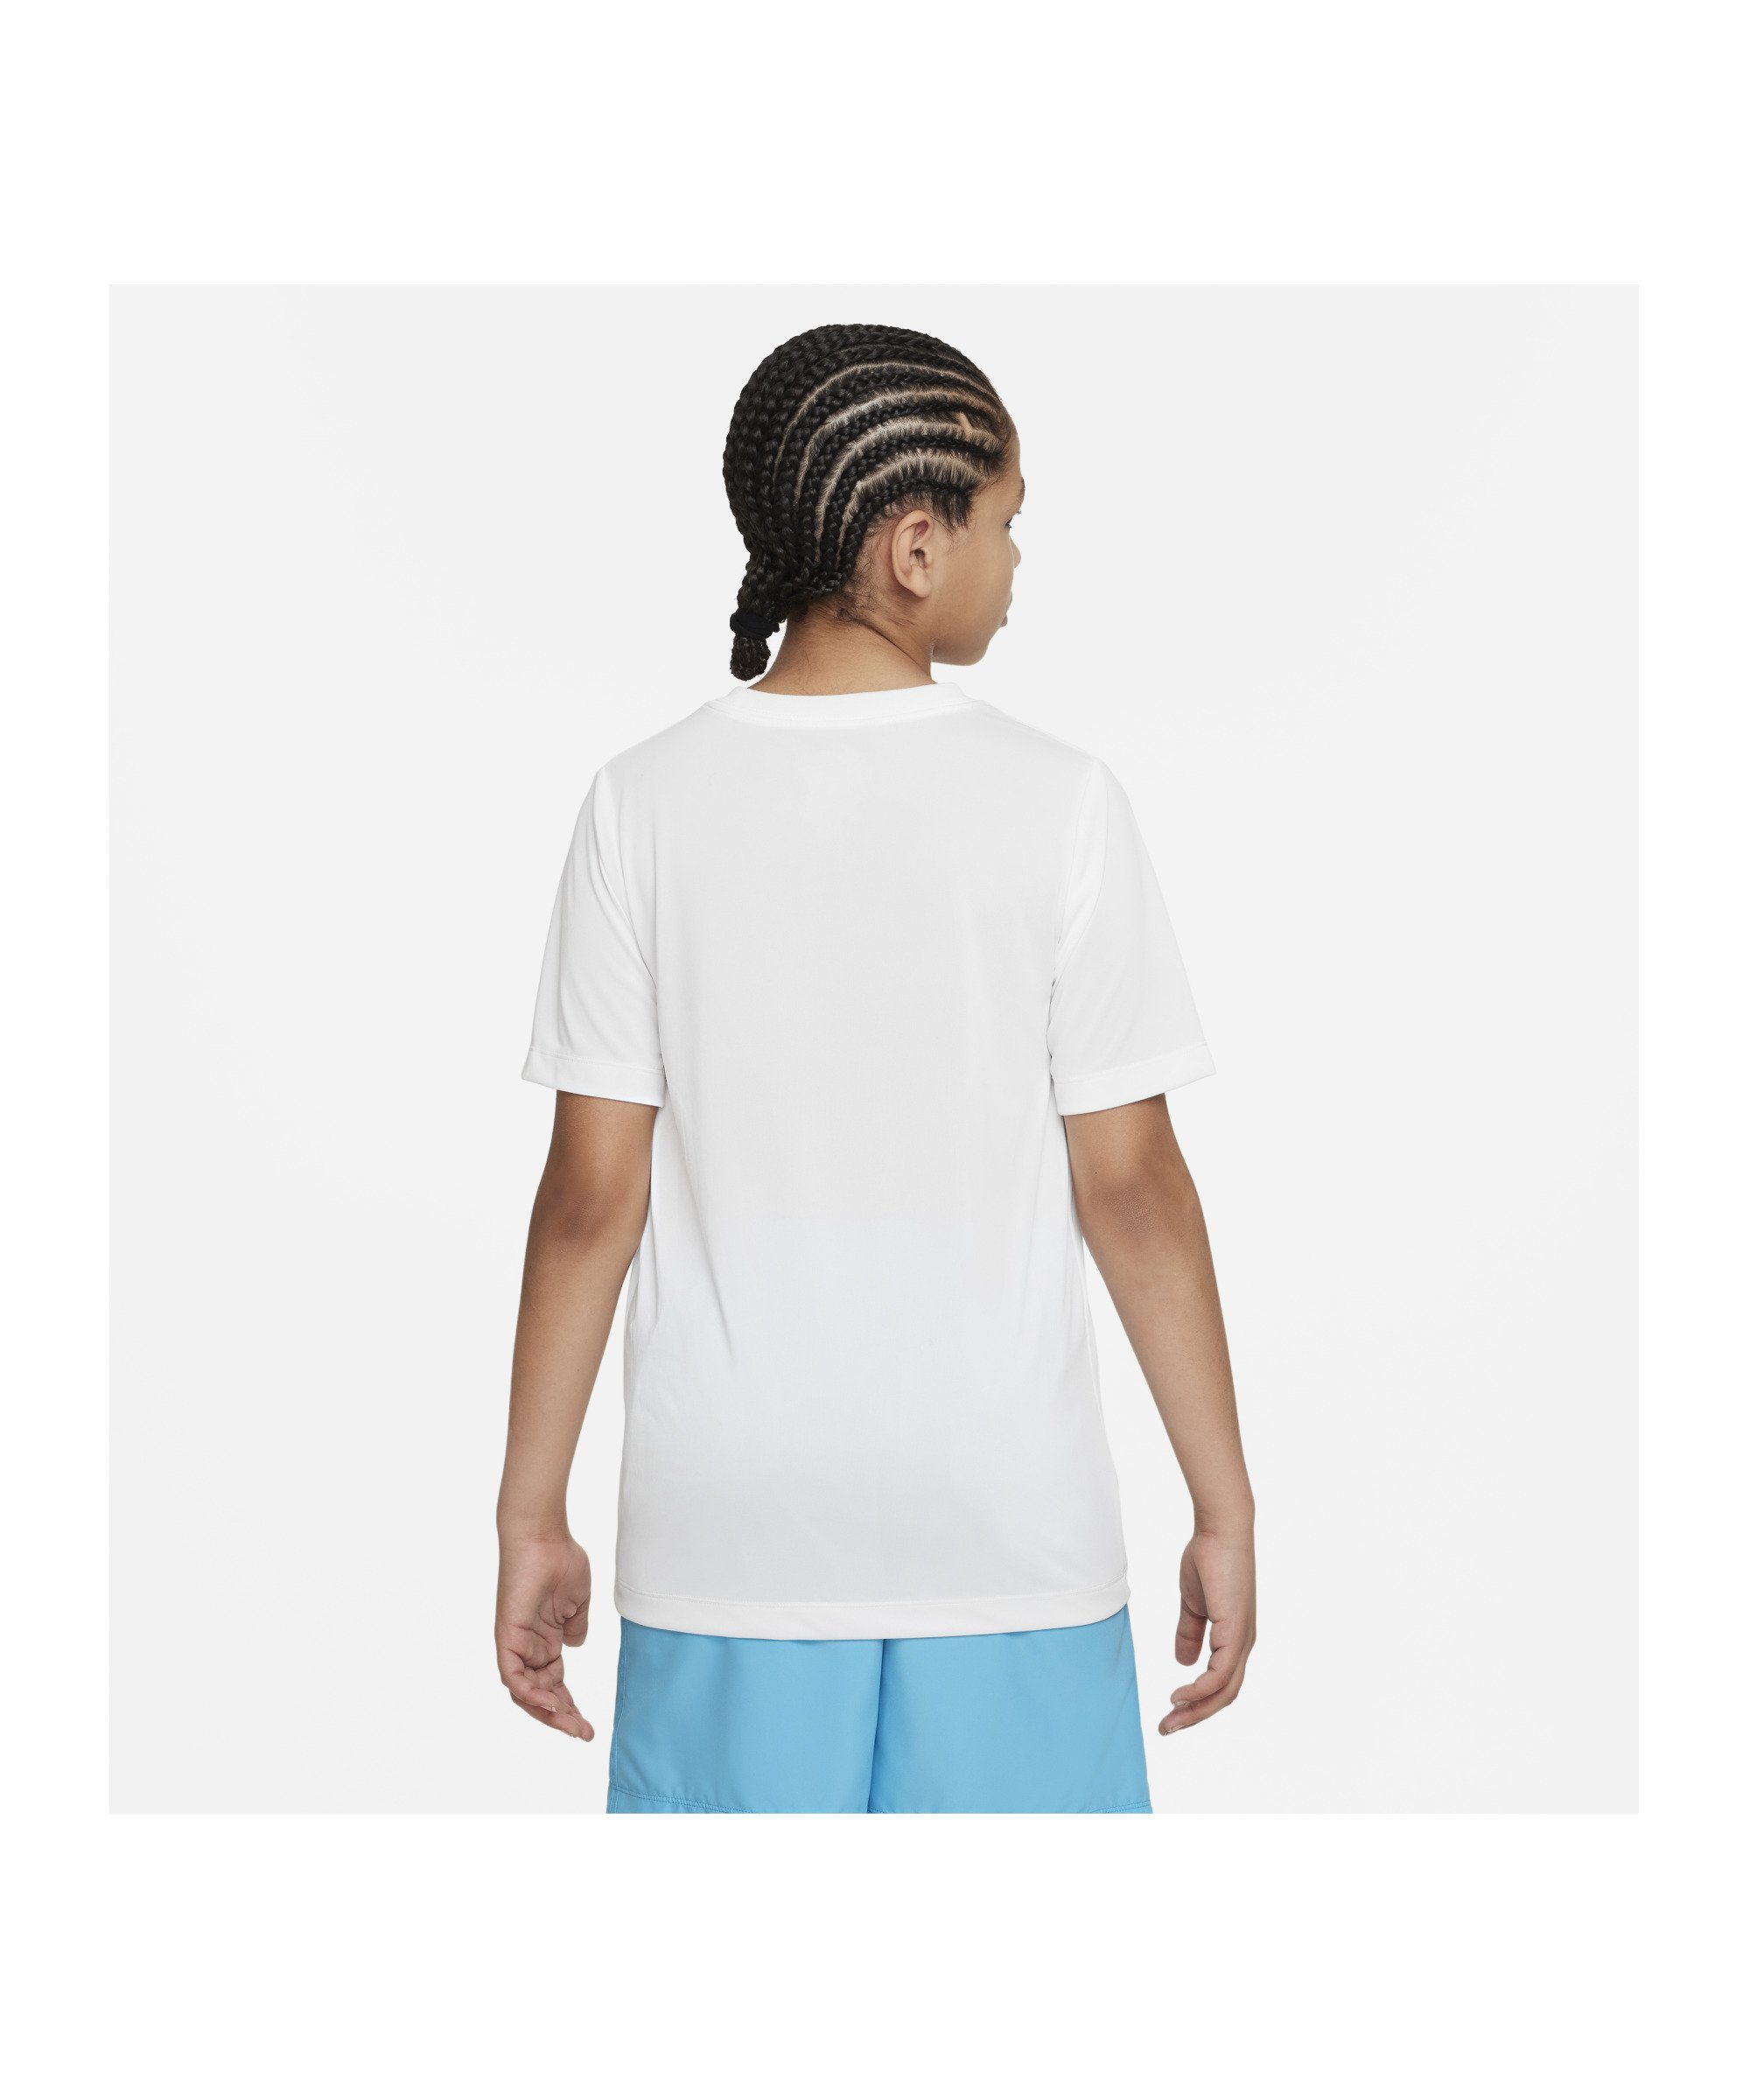 Kids weiss Training Laufshirt default Nike T-Shirt